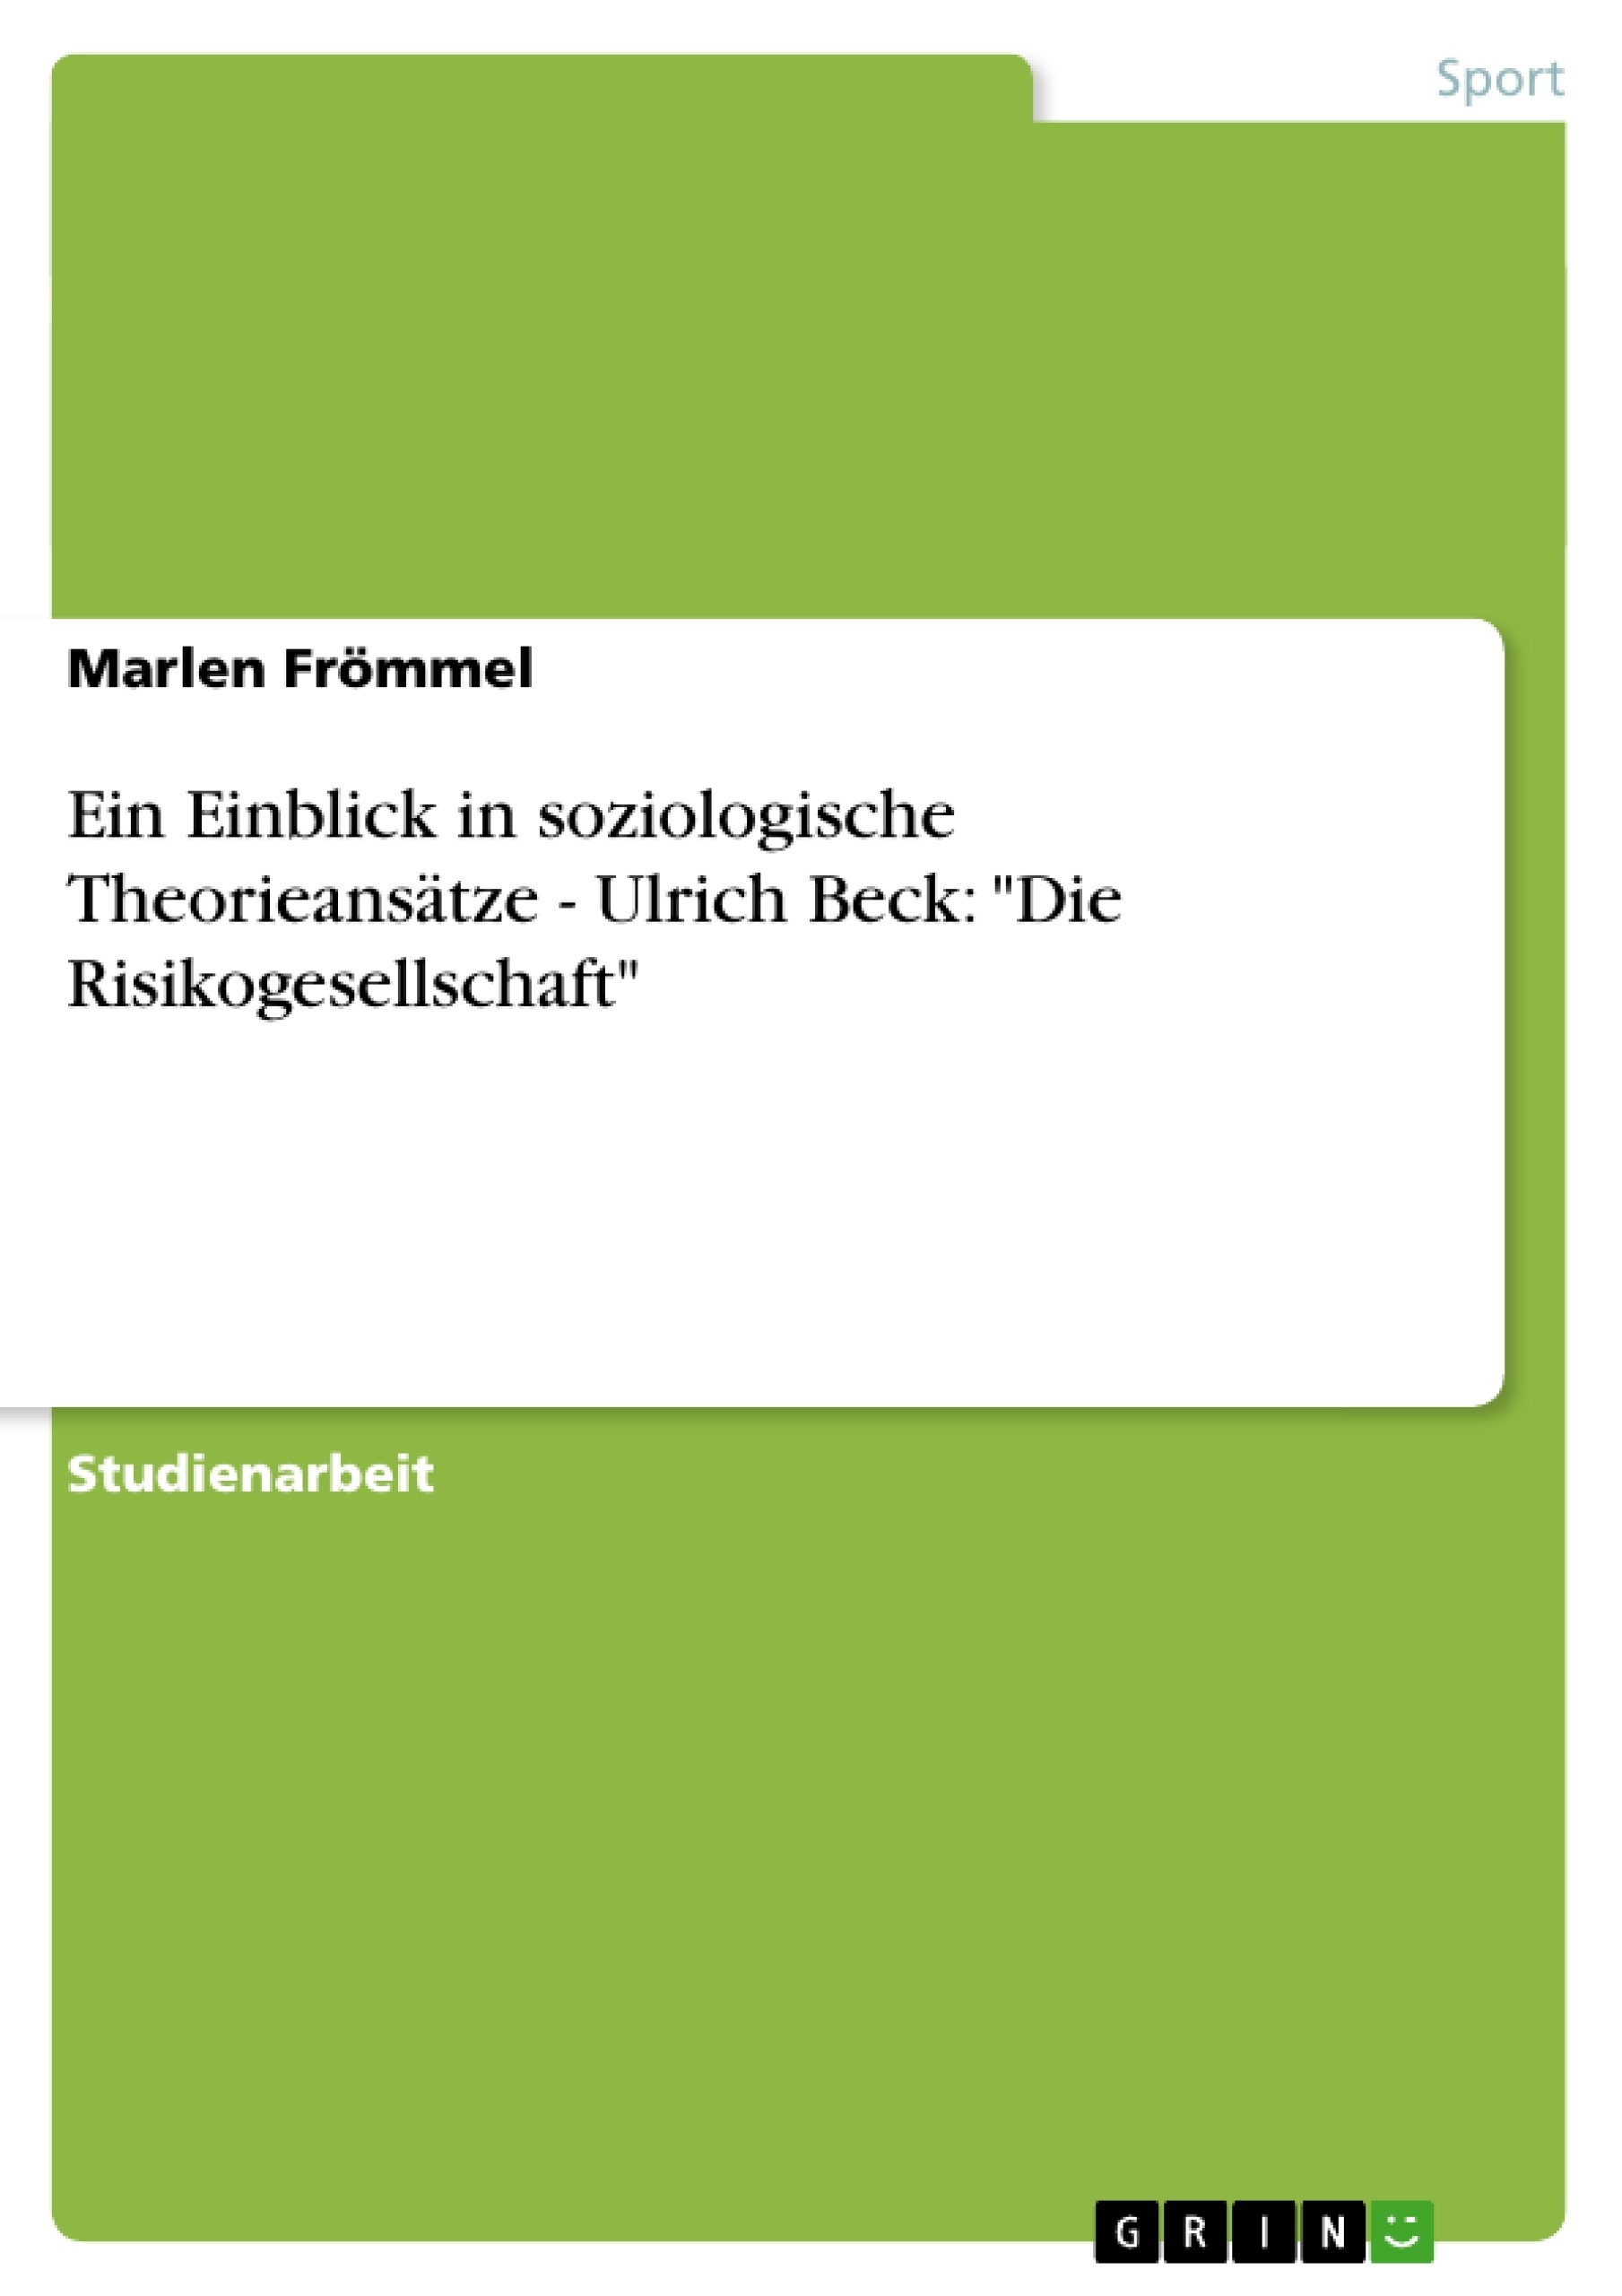 Titel: Ein Einblick in soziologische Theorieansätze - Ulrich Beck: "Die Risikogesellschaft"